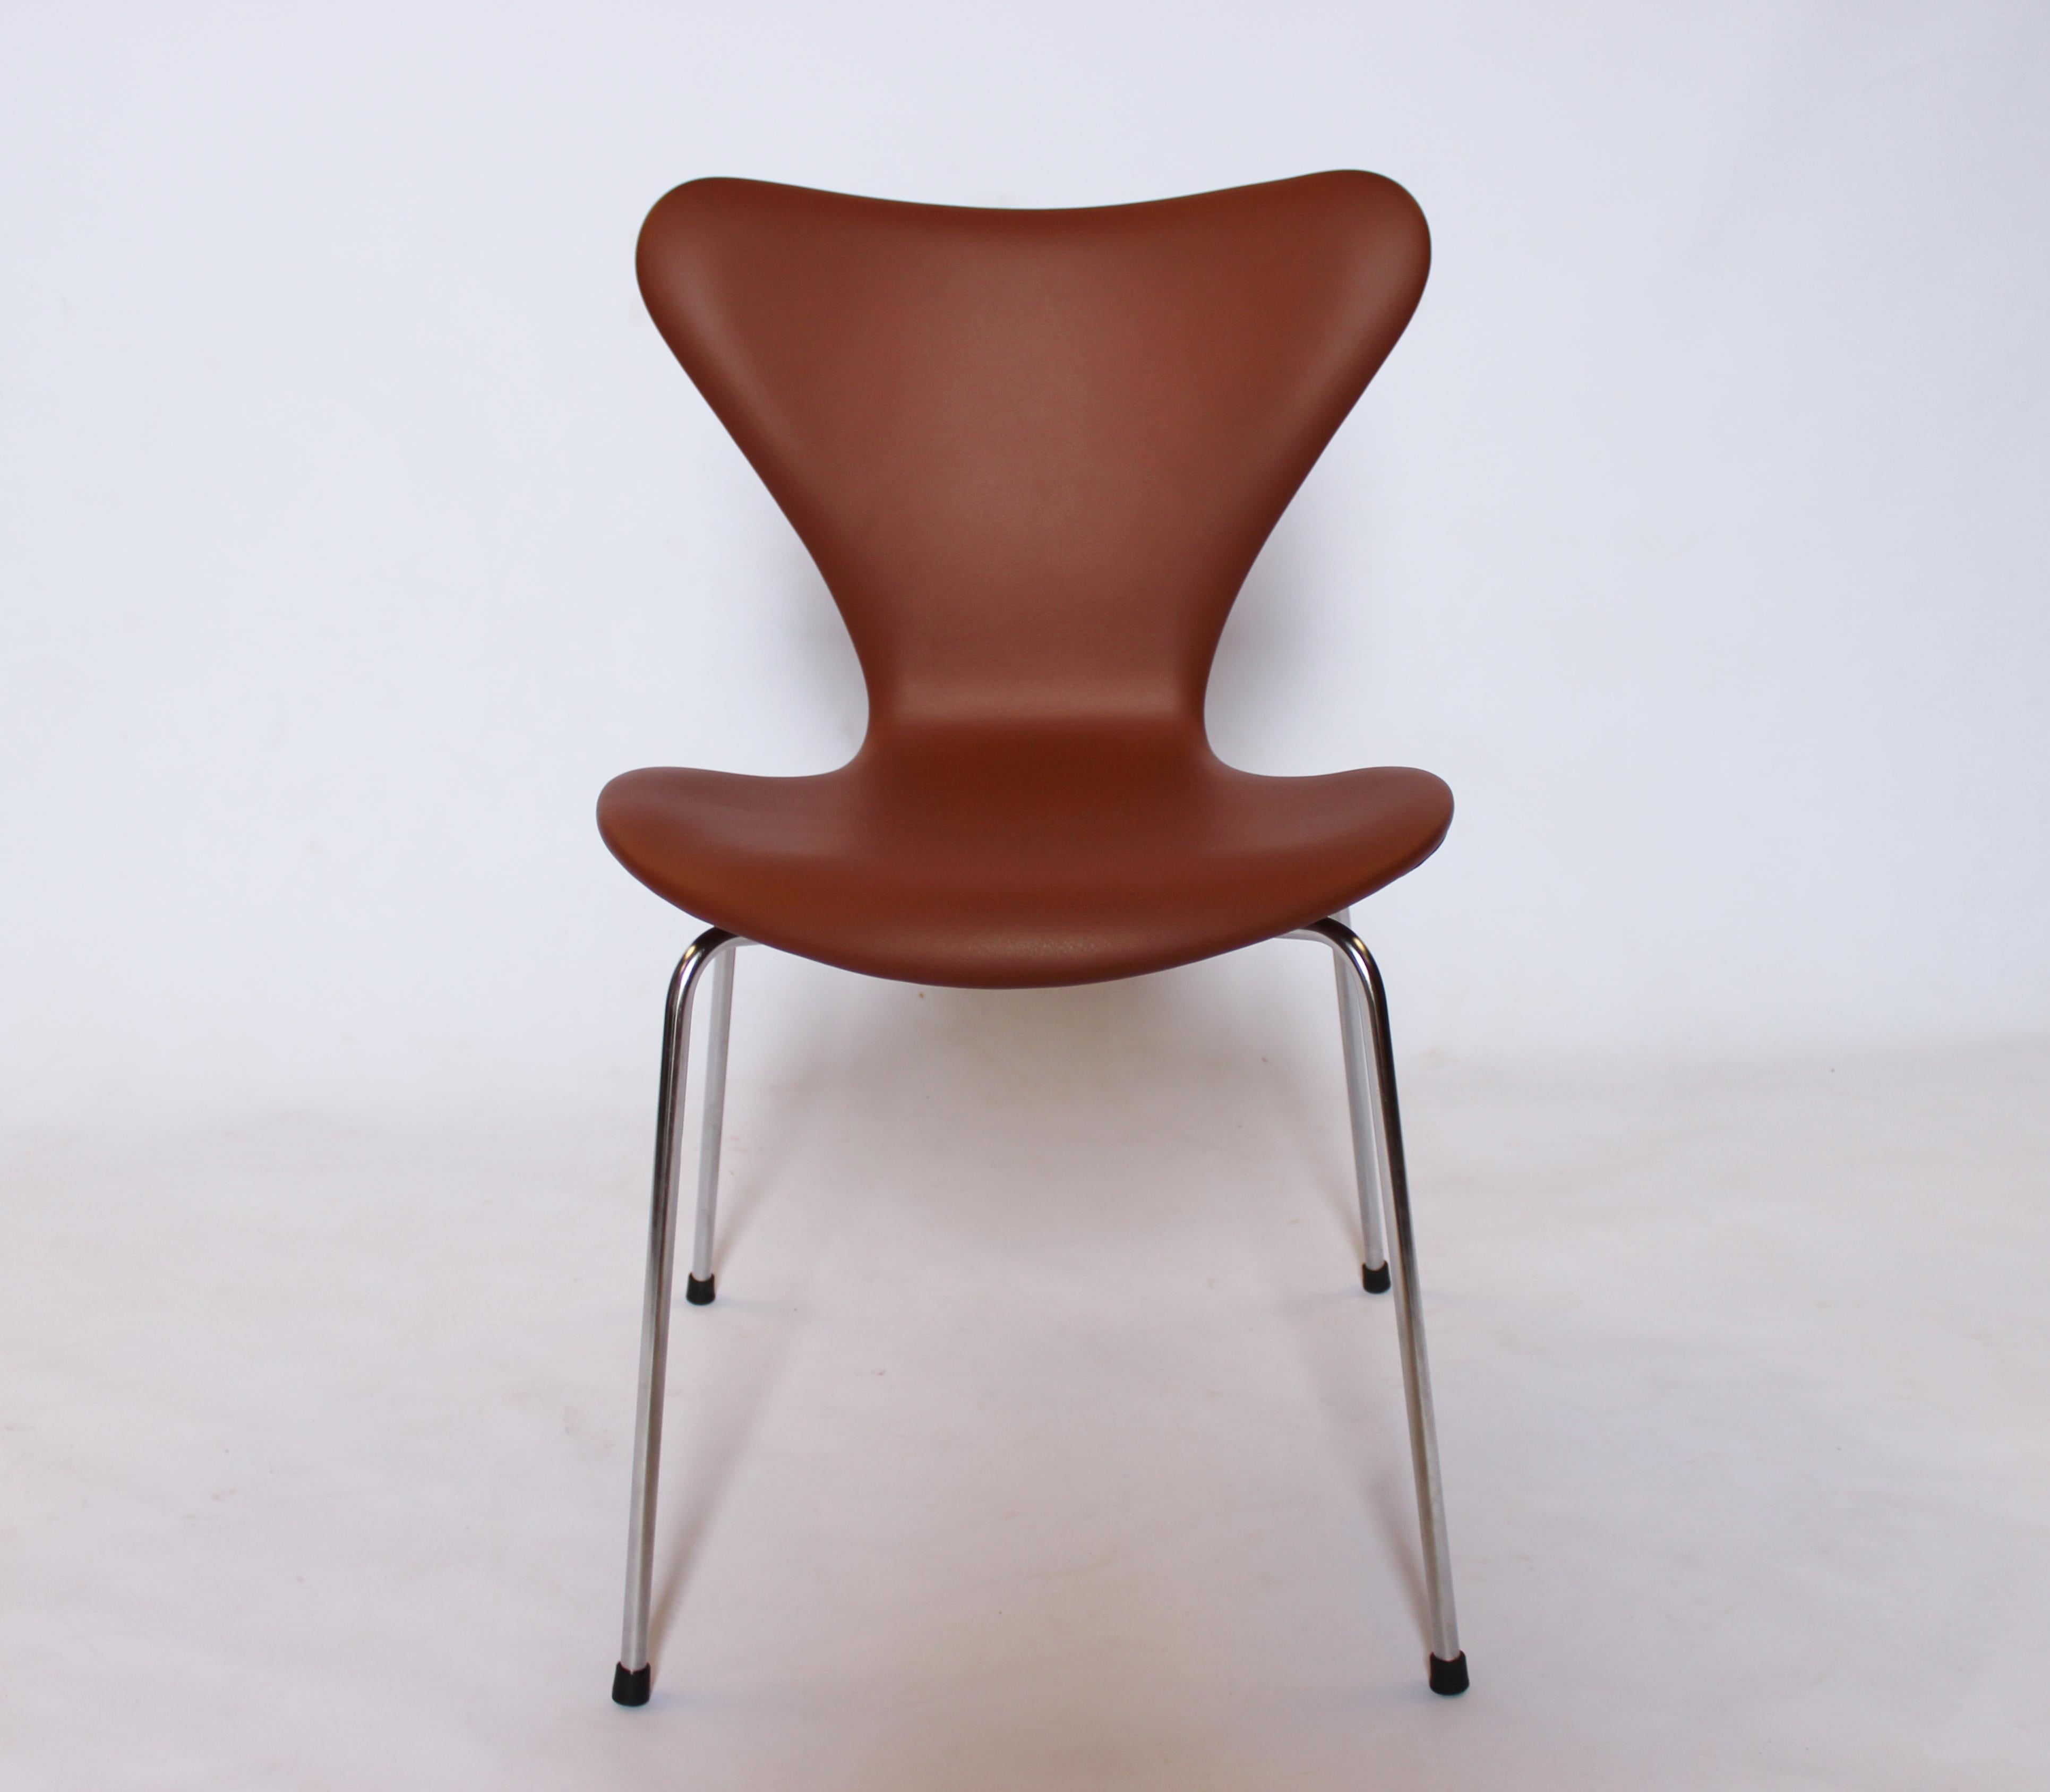 L'ensemble de quatre chaises Seven, modèle 3107, conçu par Arne Jacobsen et fabriqué par Fritz Hansen en 1967, est une collection de chaises hautement désirable et emblématique.

Le modèle 3107 d'Arne Jacobsen, également connu sous le nom de 